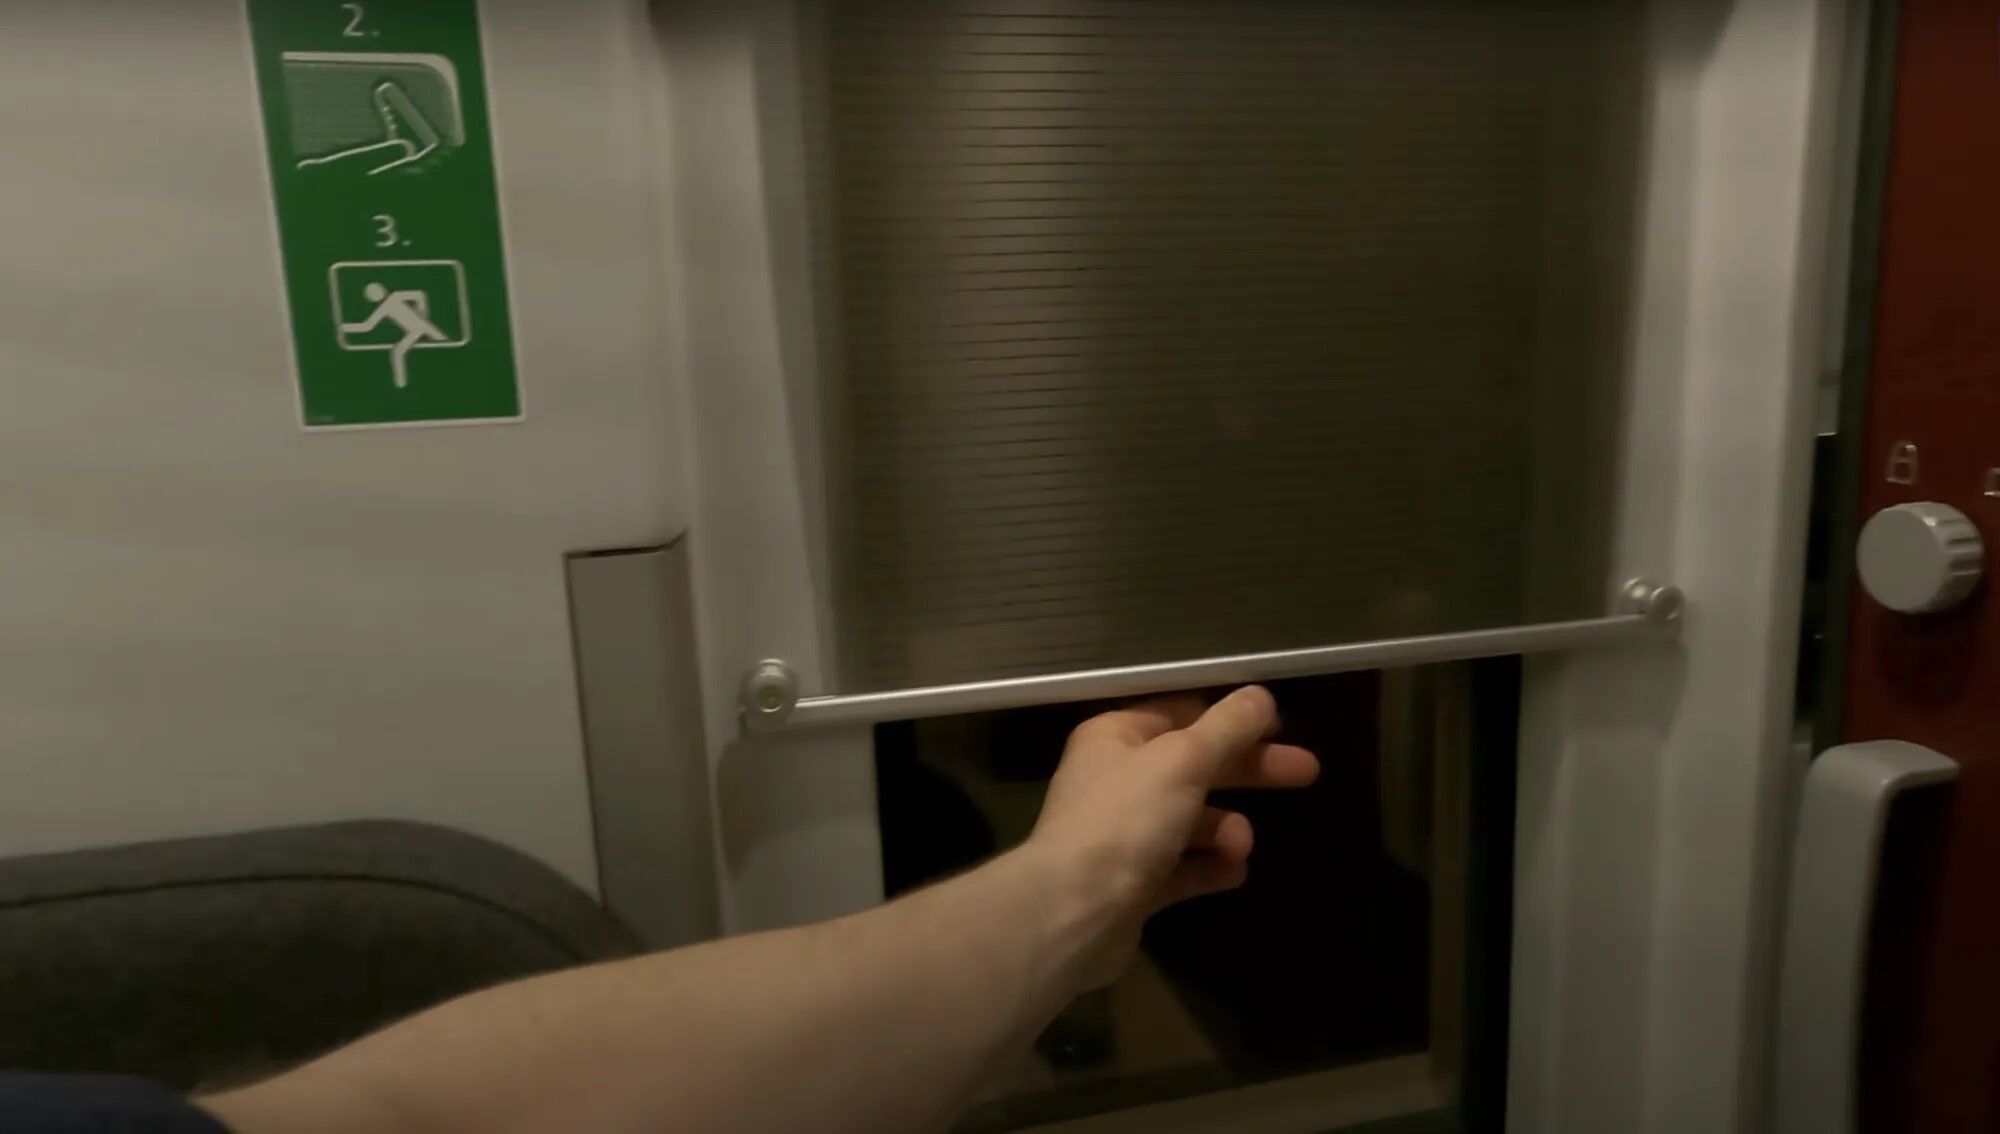 В Австрии начал курсировать новый поезд с индивидуальными капсулами для пассажиров: как это выглядит